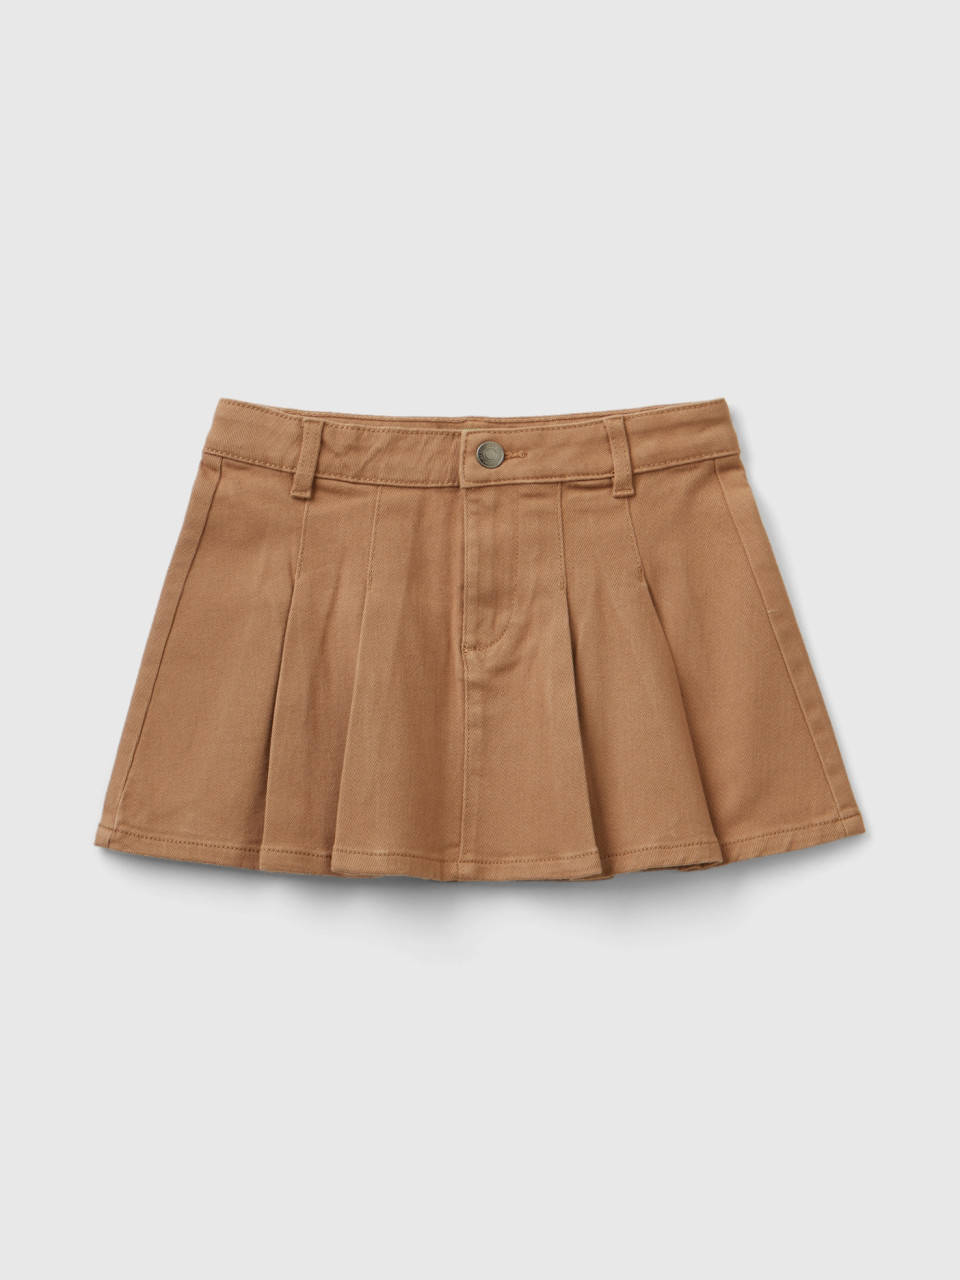 Benetton, Pleated Miniskirt, Camel, Kids